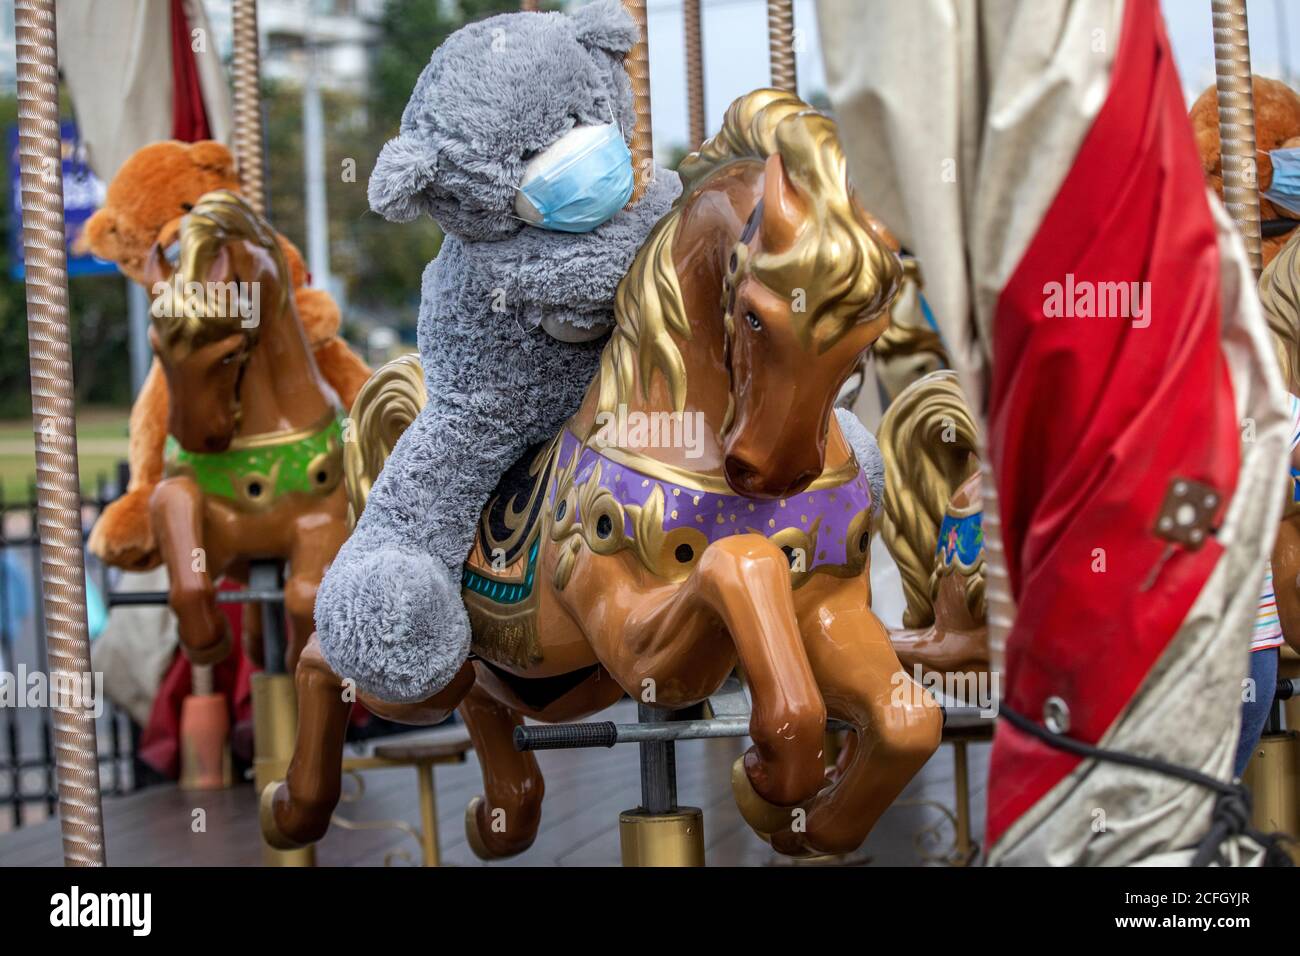 Un juguete de oso de peluche con una máscara protectora se asienta un caballo de carrusel en una ciudad durante las restricciones con La nueva pandemia de coronavirus COIVD-19 Foto de stock